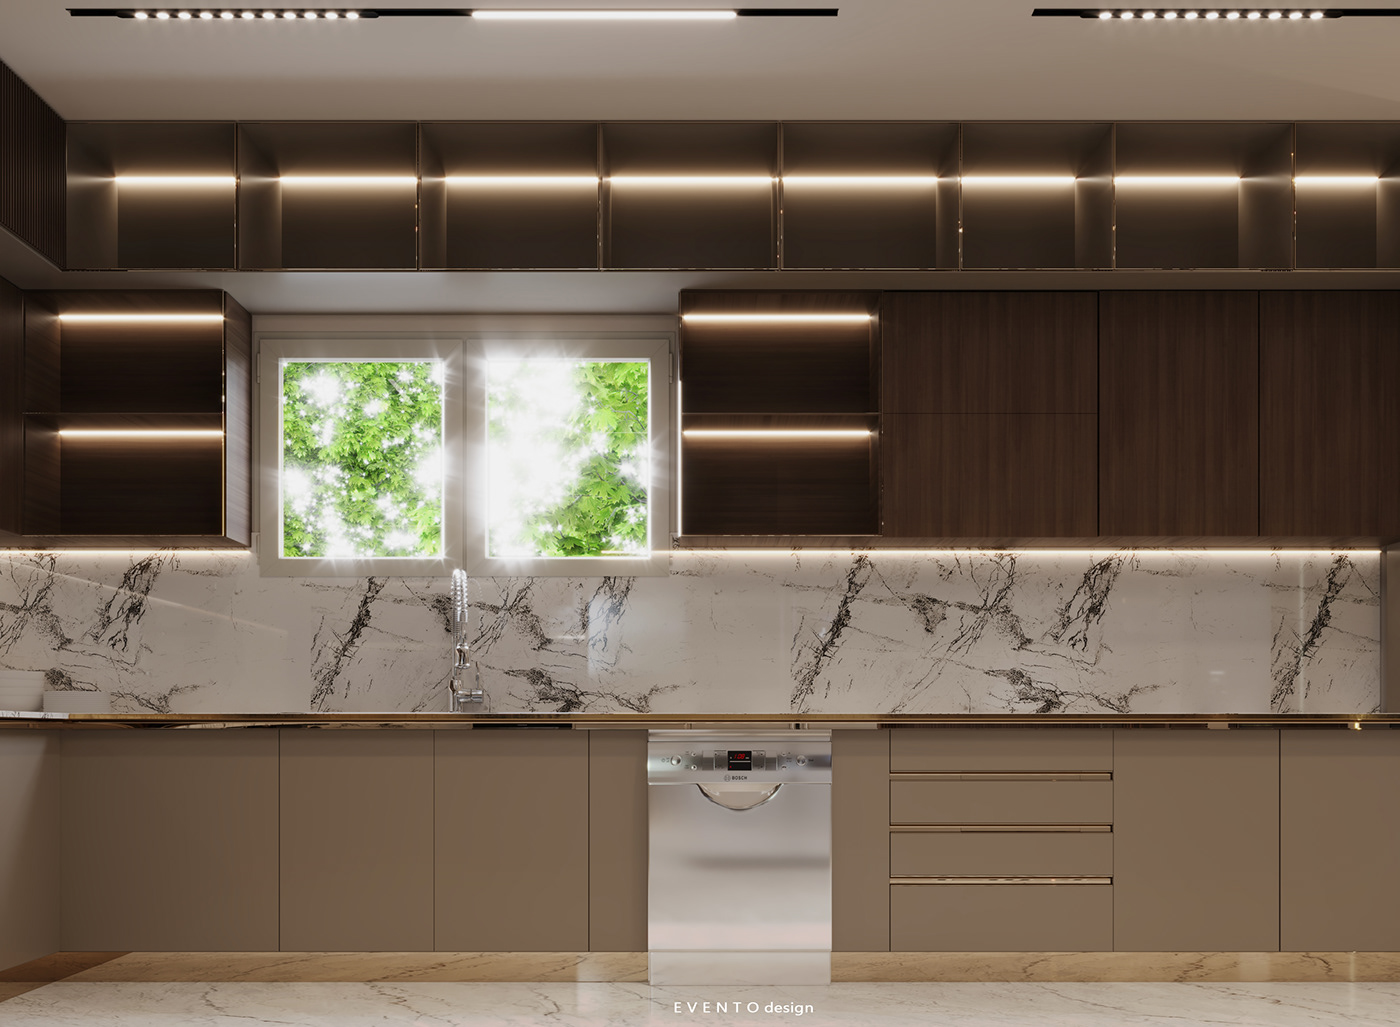 Kitchen Appliance Render modern 3ds max archviz visualization architecture interior design  corona design